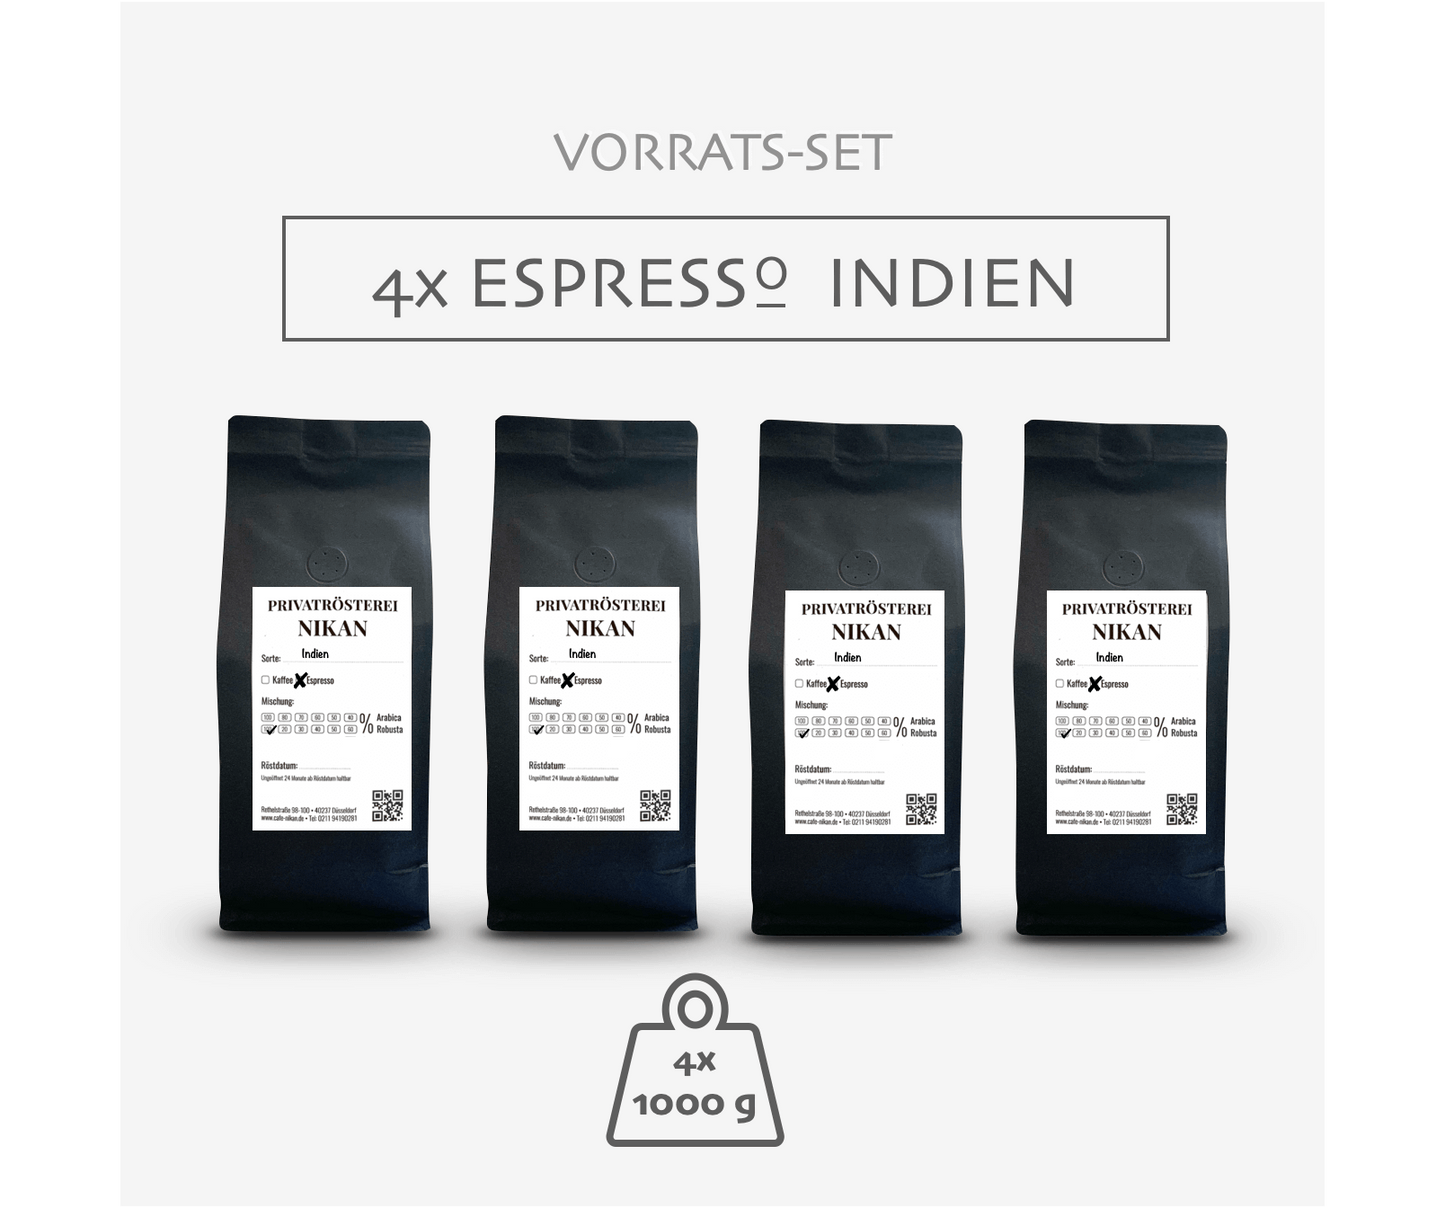 4x 1kg Espresso Indien Vorrats-Set